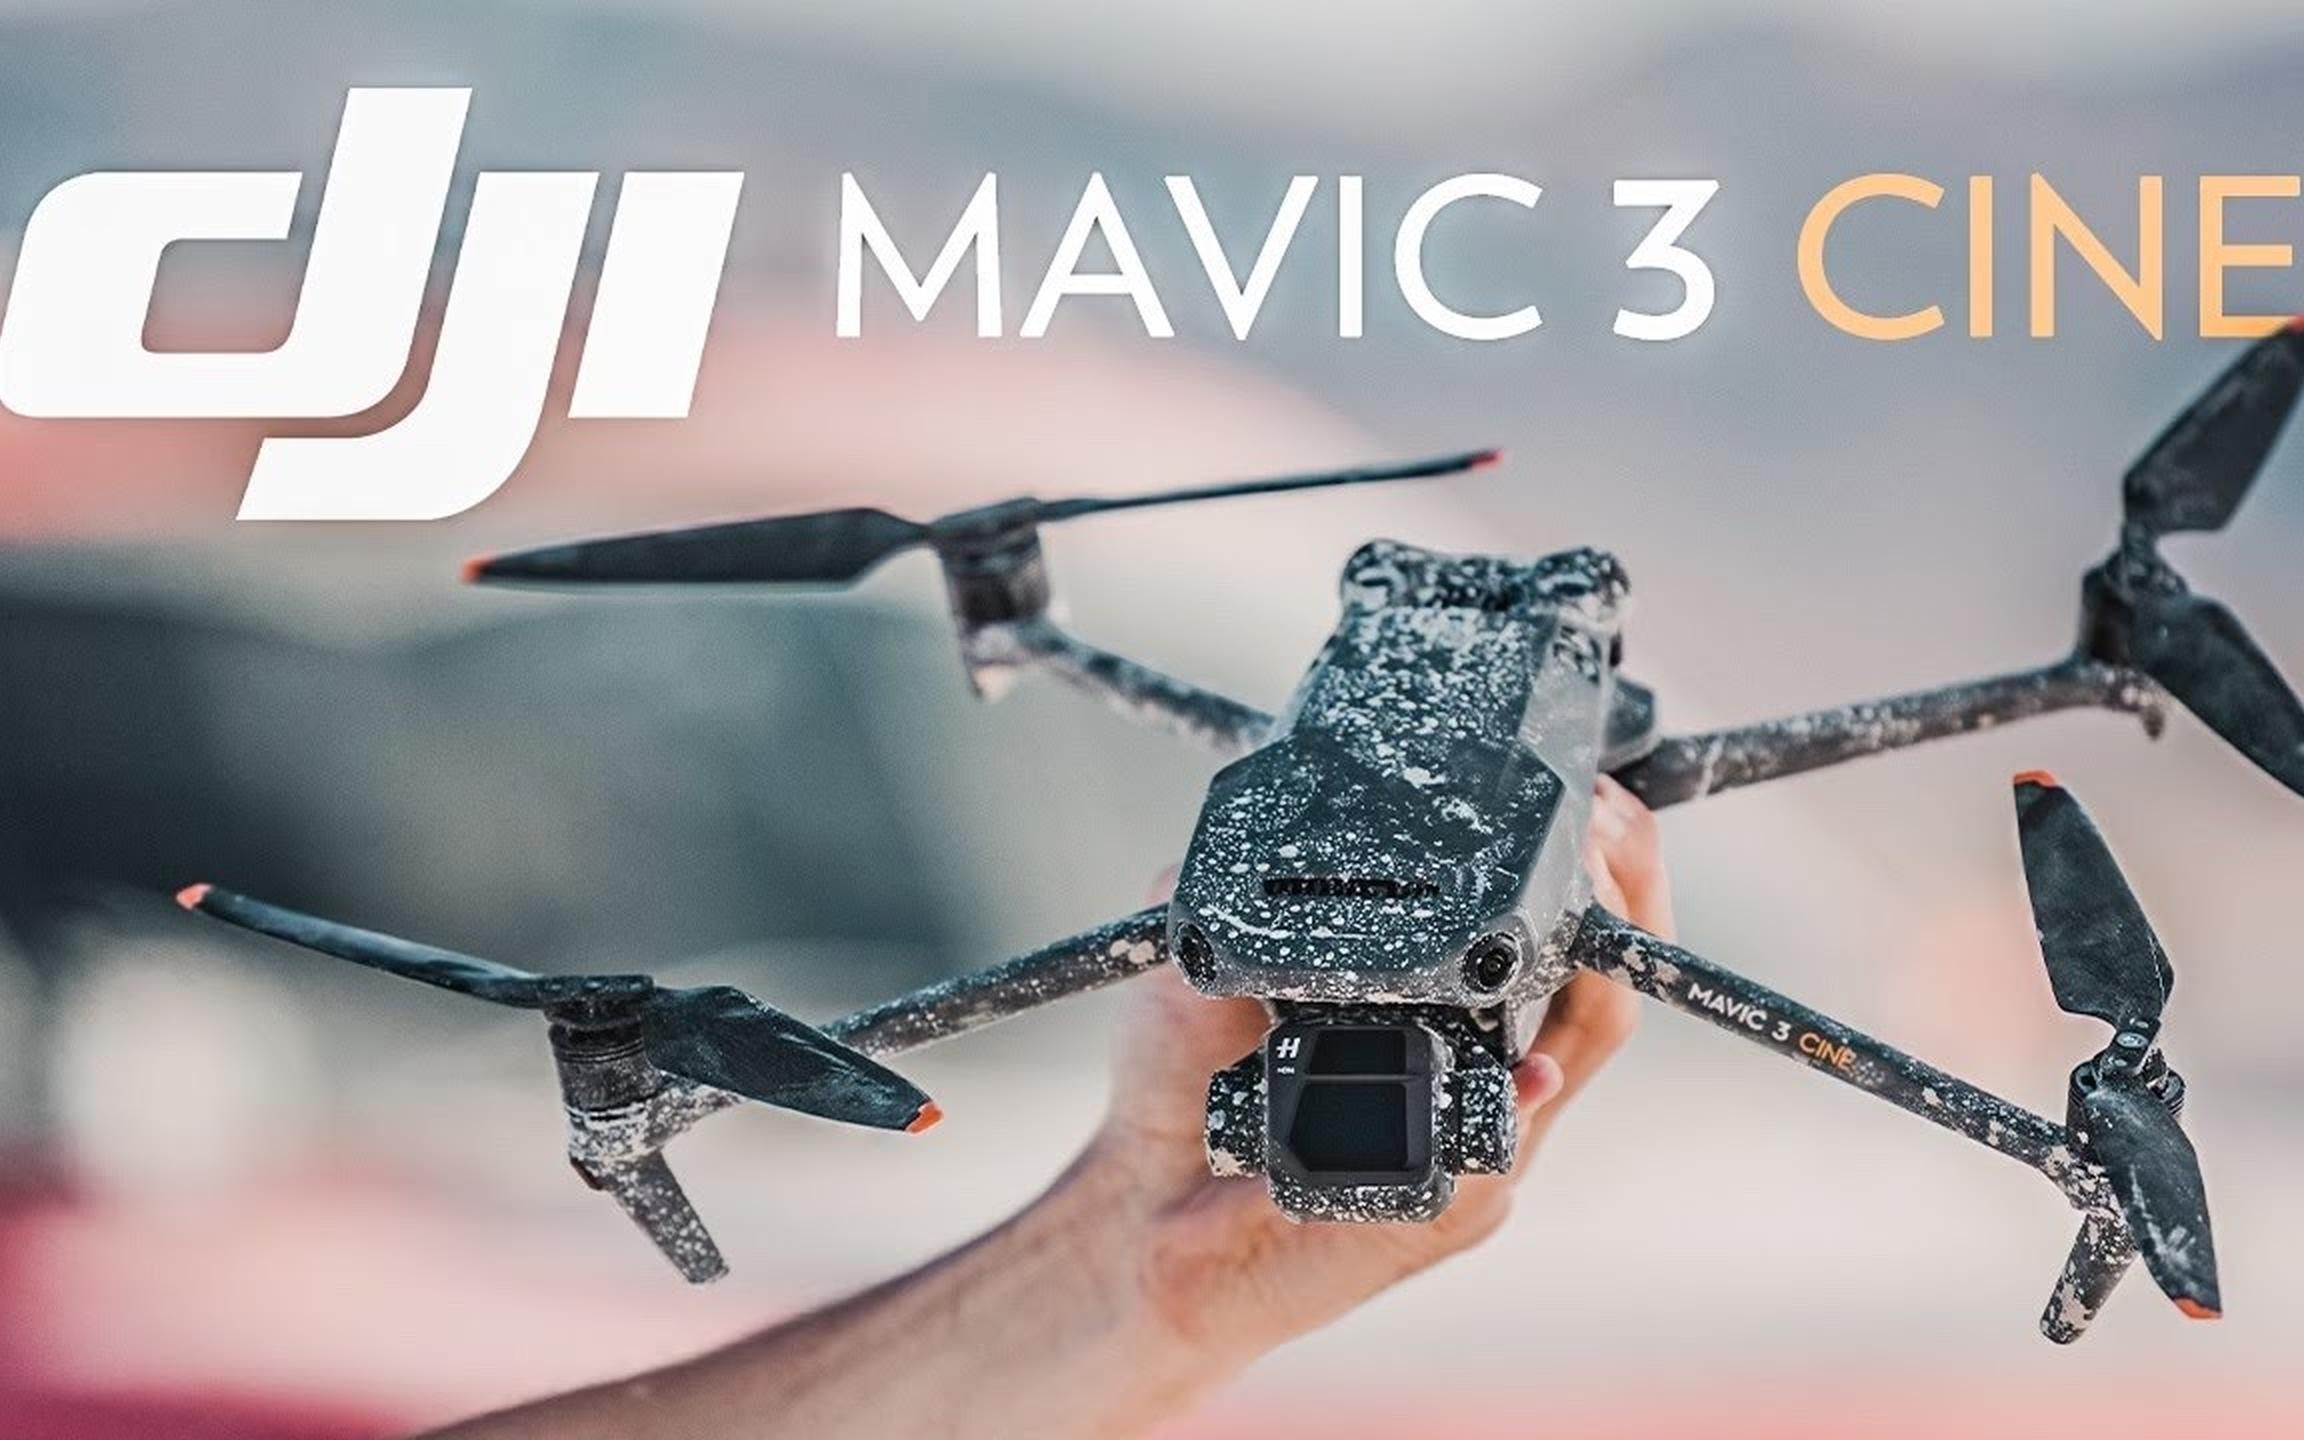 dji mavic 3 cine——专业人士的最佳紧凑型无人机